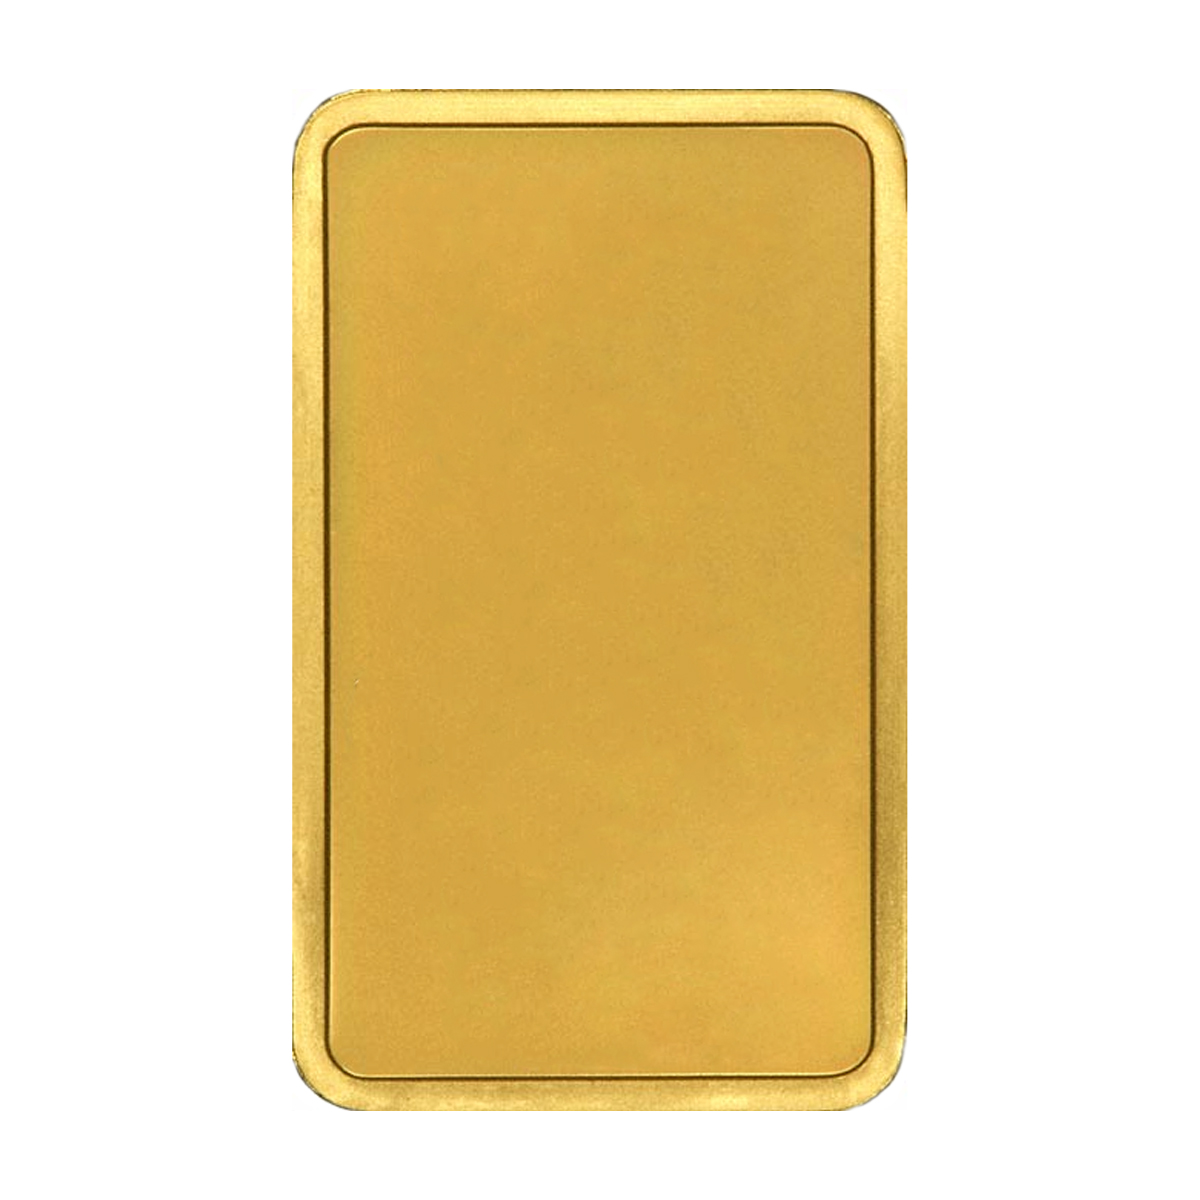 10 גרם מטיל זהב - Pamp Suisse